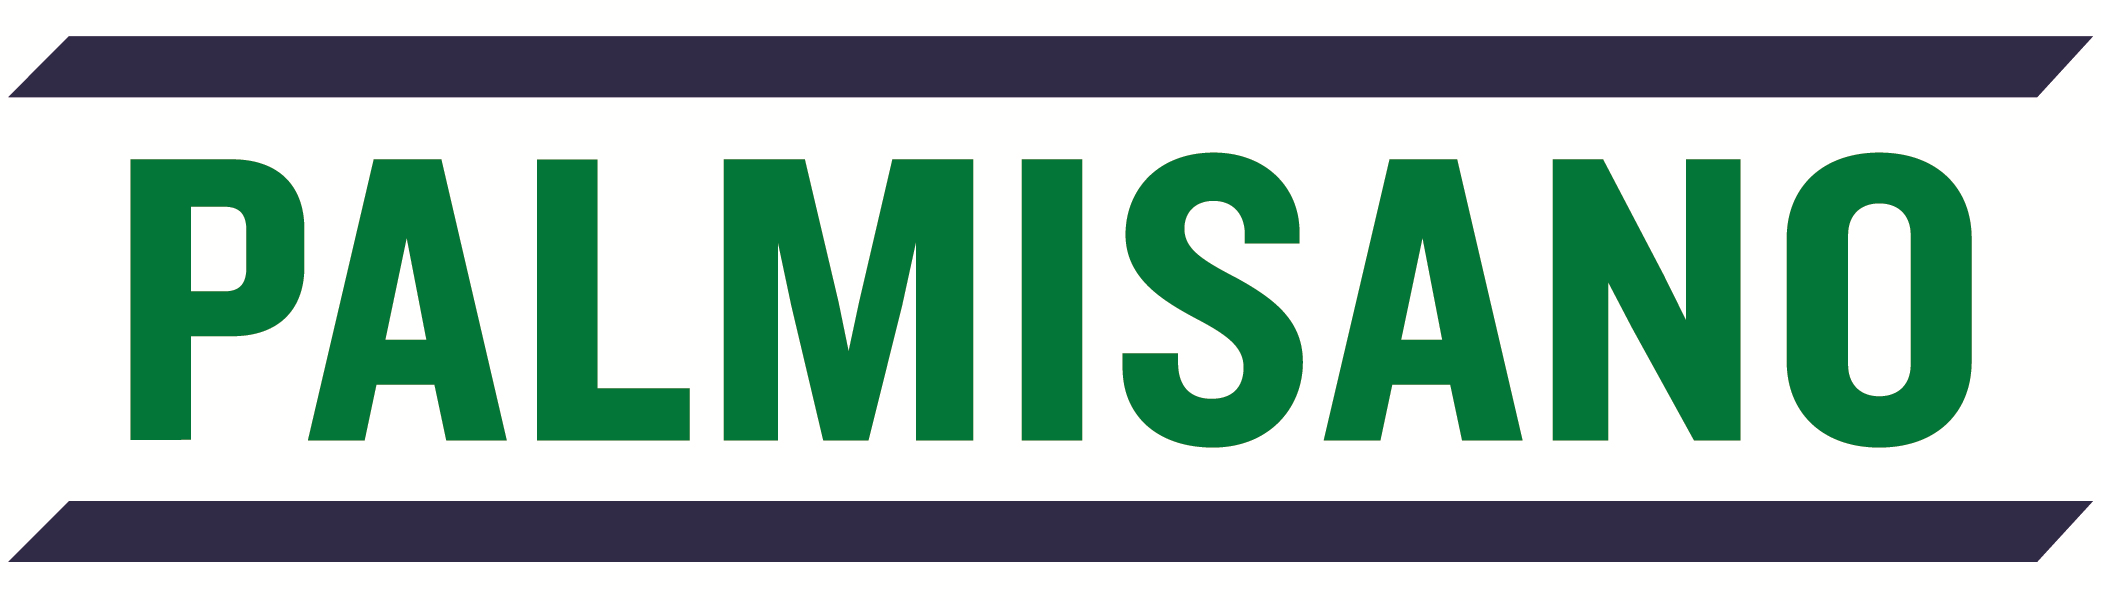 Impetus, A Palmisano Company Company Logo